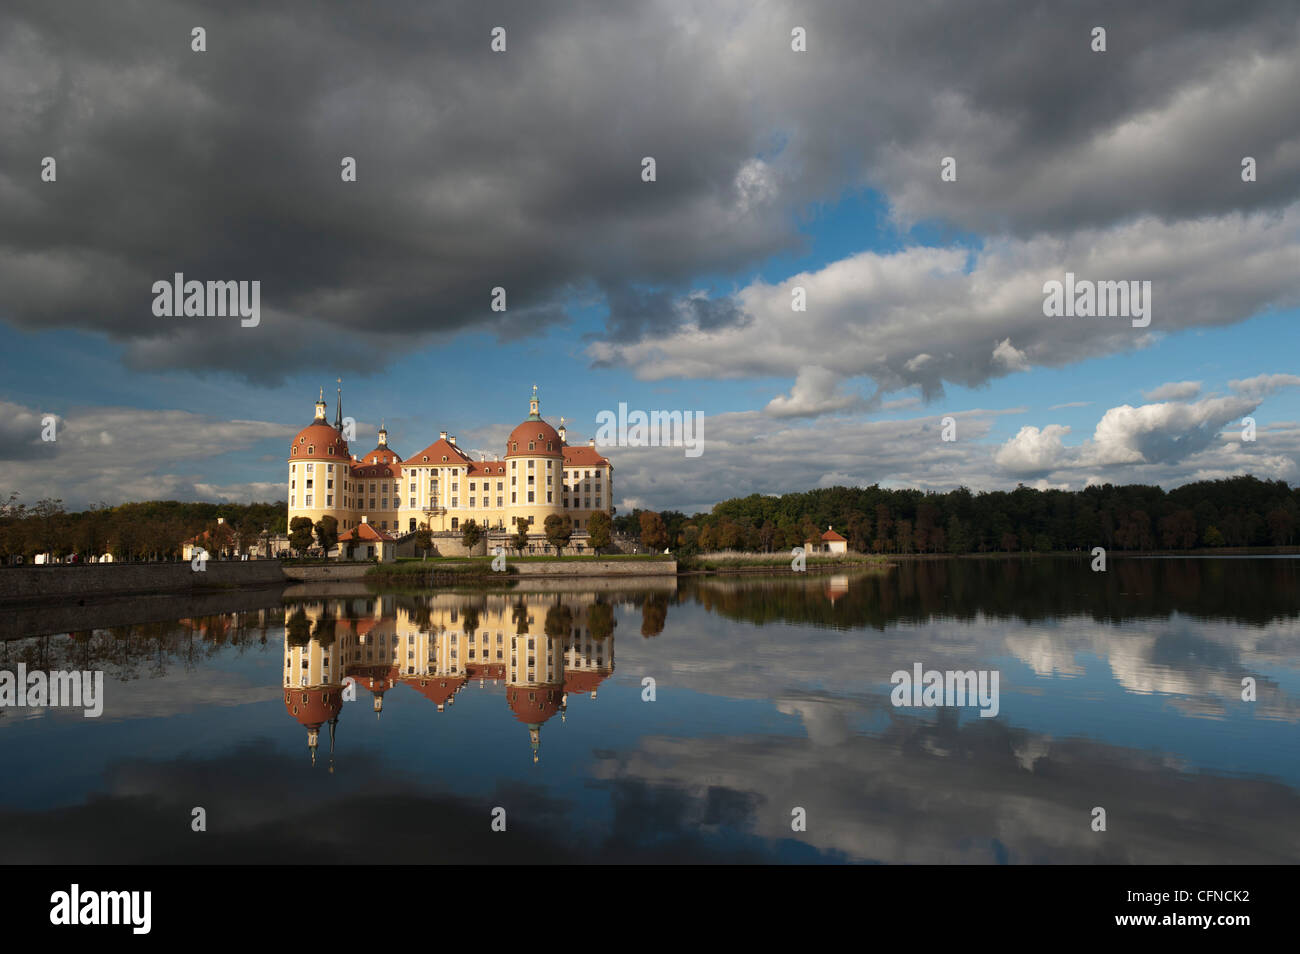 Castillo de Moritzburg barroco y reflejos en el lago, Moritzburg, Sajonia, Alemania, Europa Foto de stock